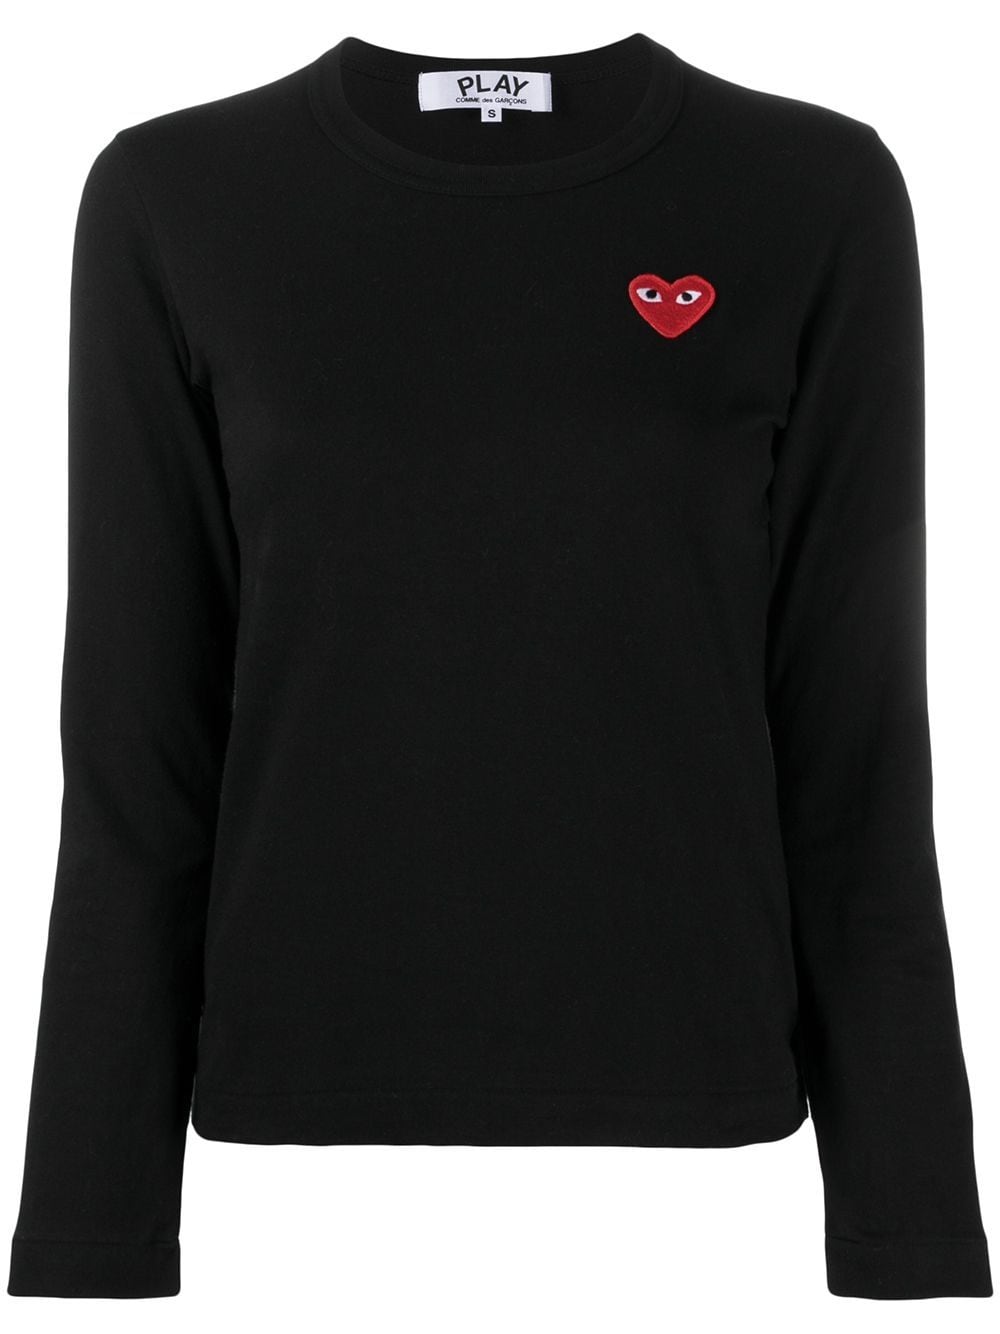 T-shirt semplice in cotone nero con logo cuore applicato